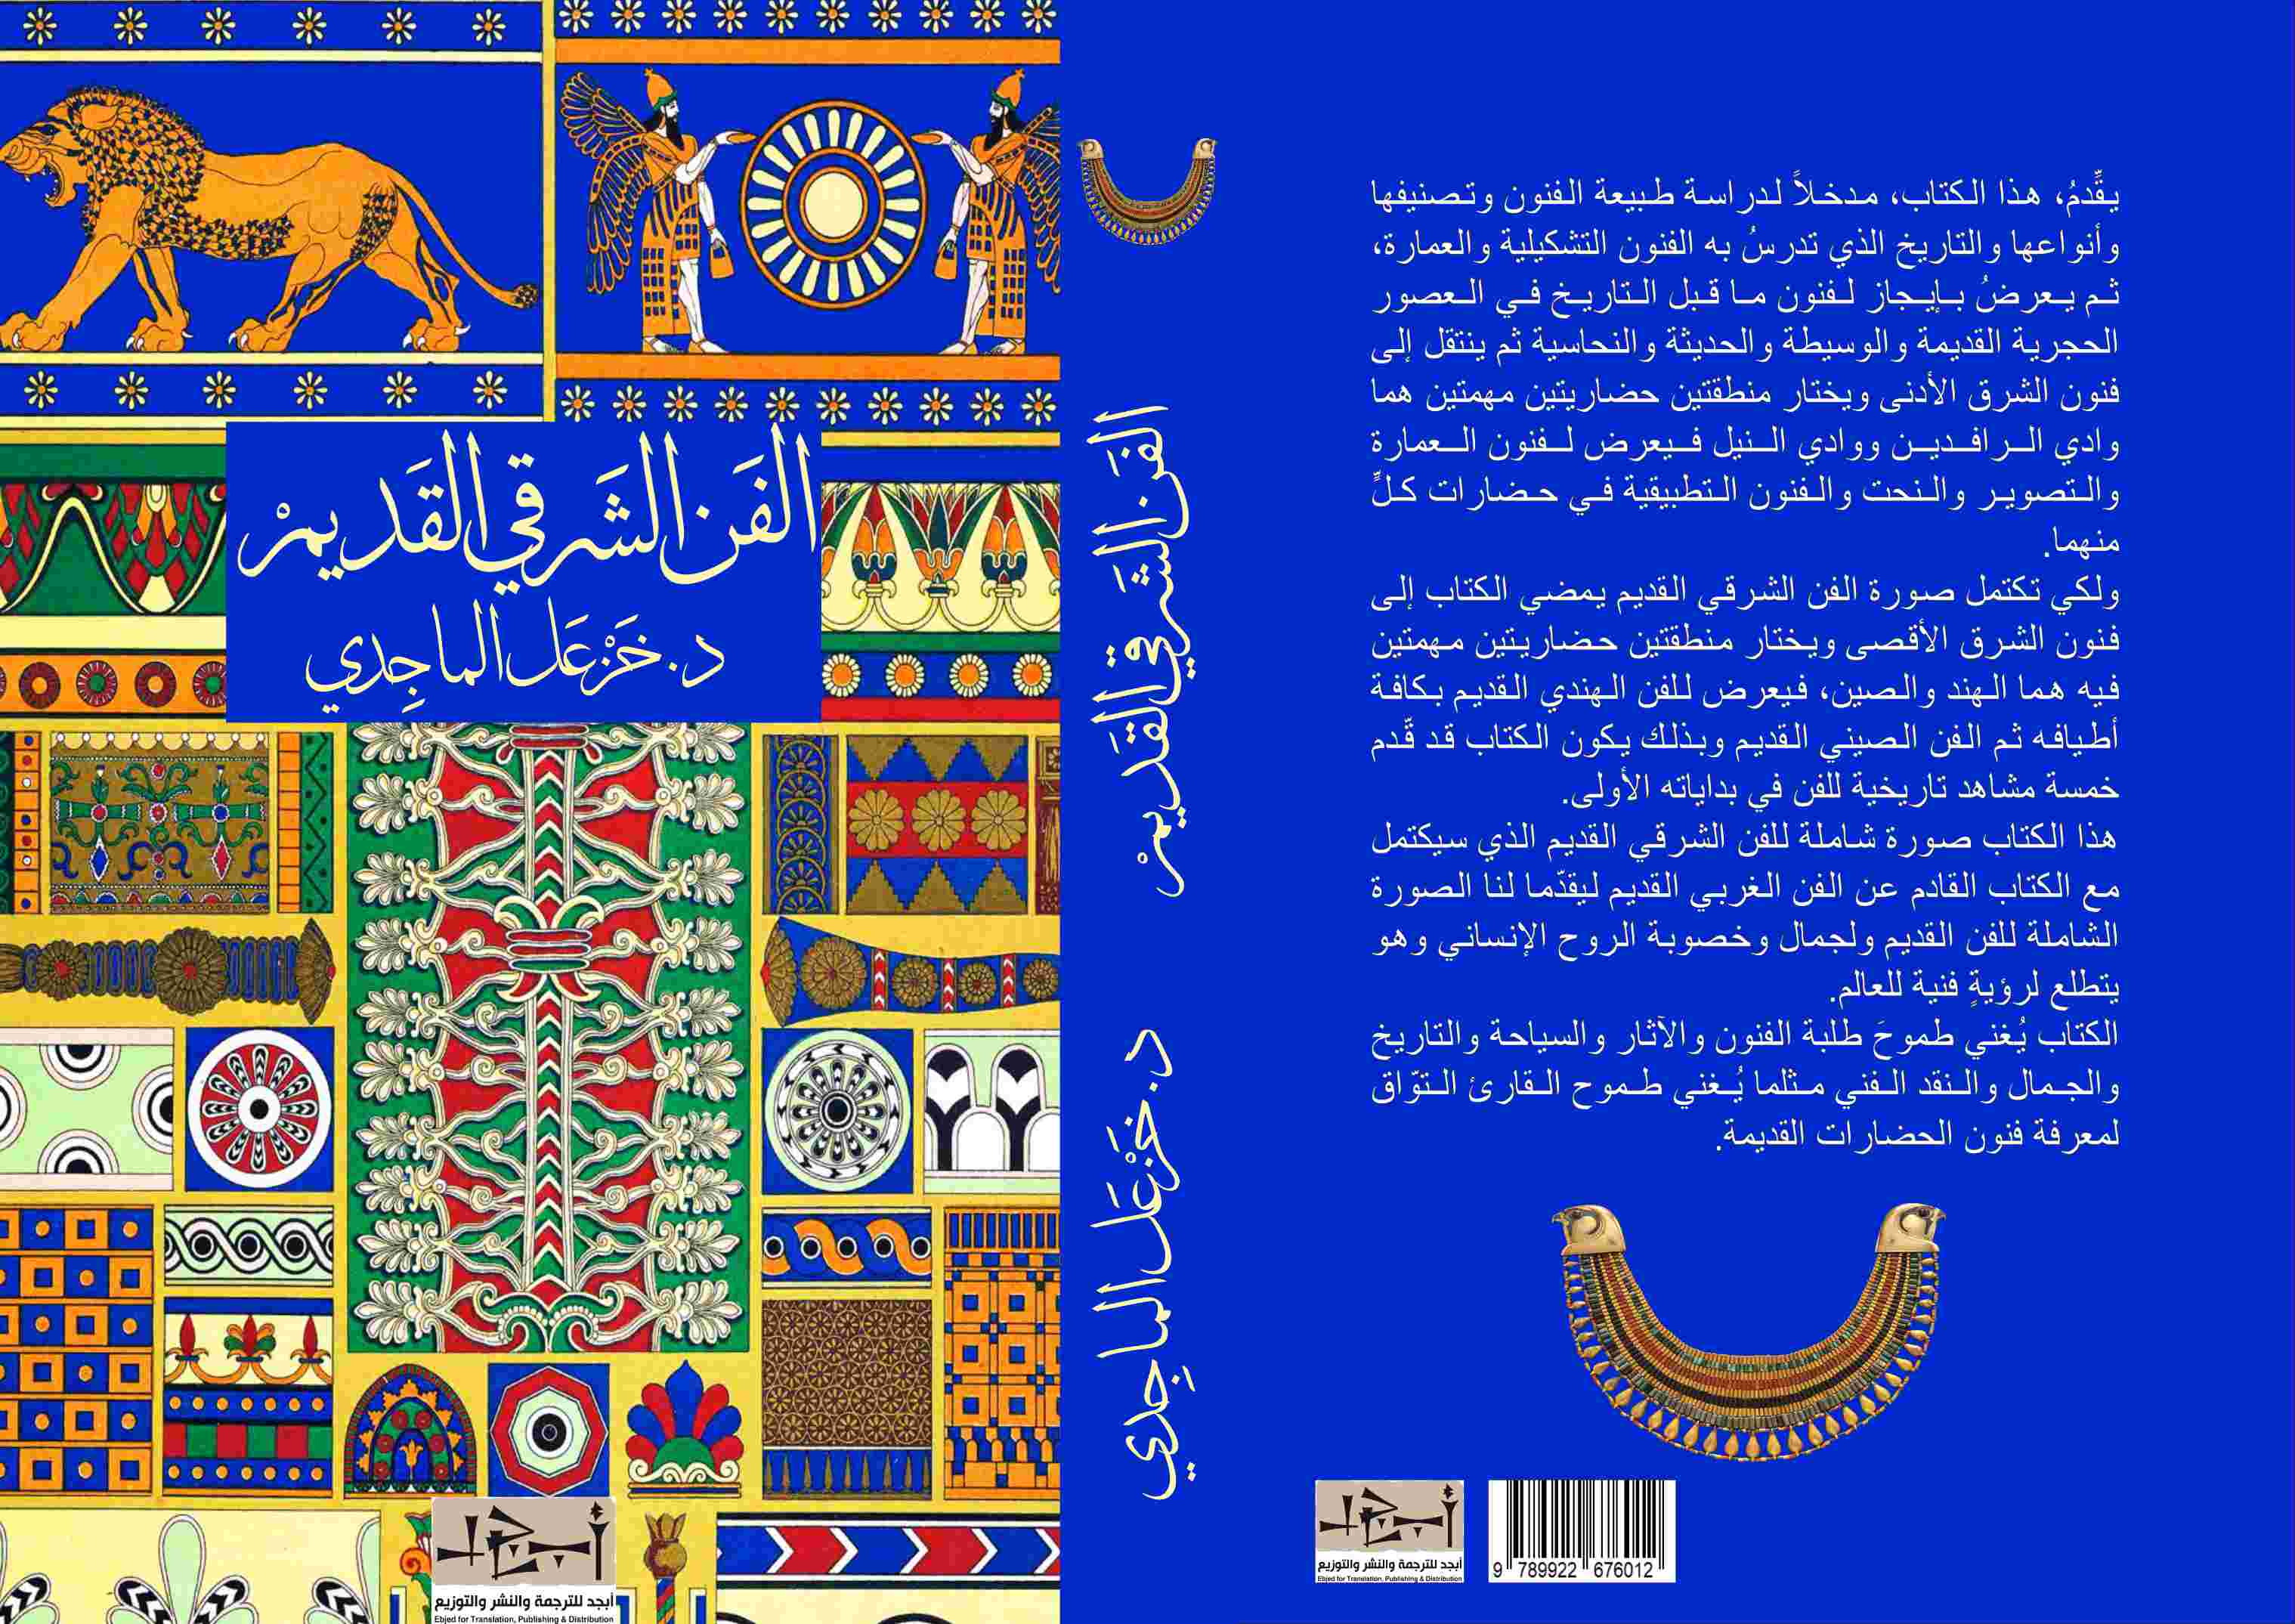 اسم الكتاب: الفن الشرقي القديم - تأليف: د. خزعل الماجدي 